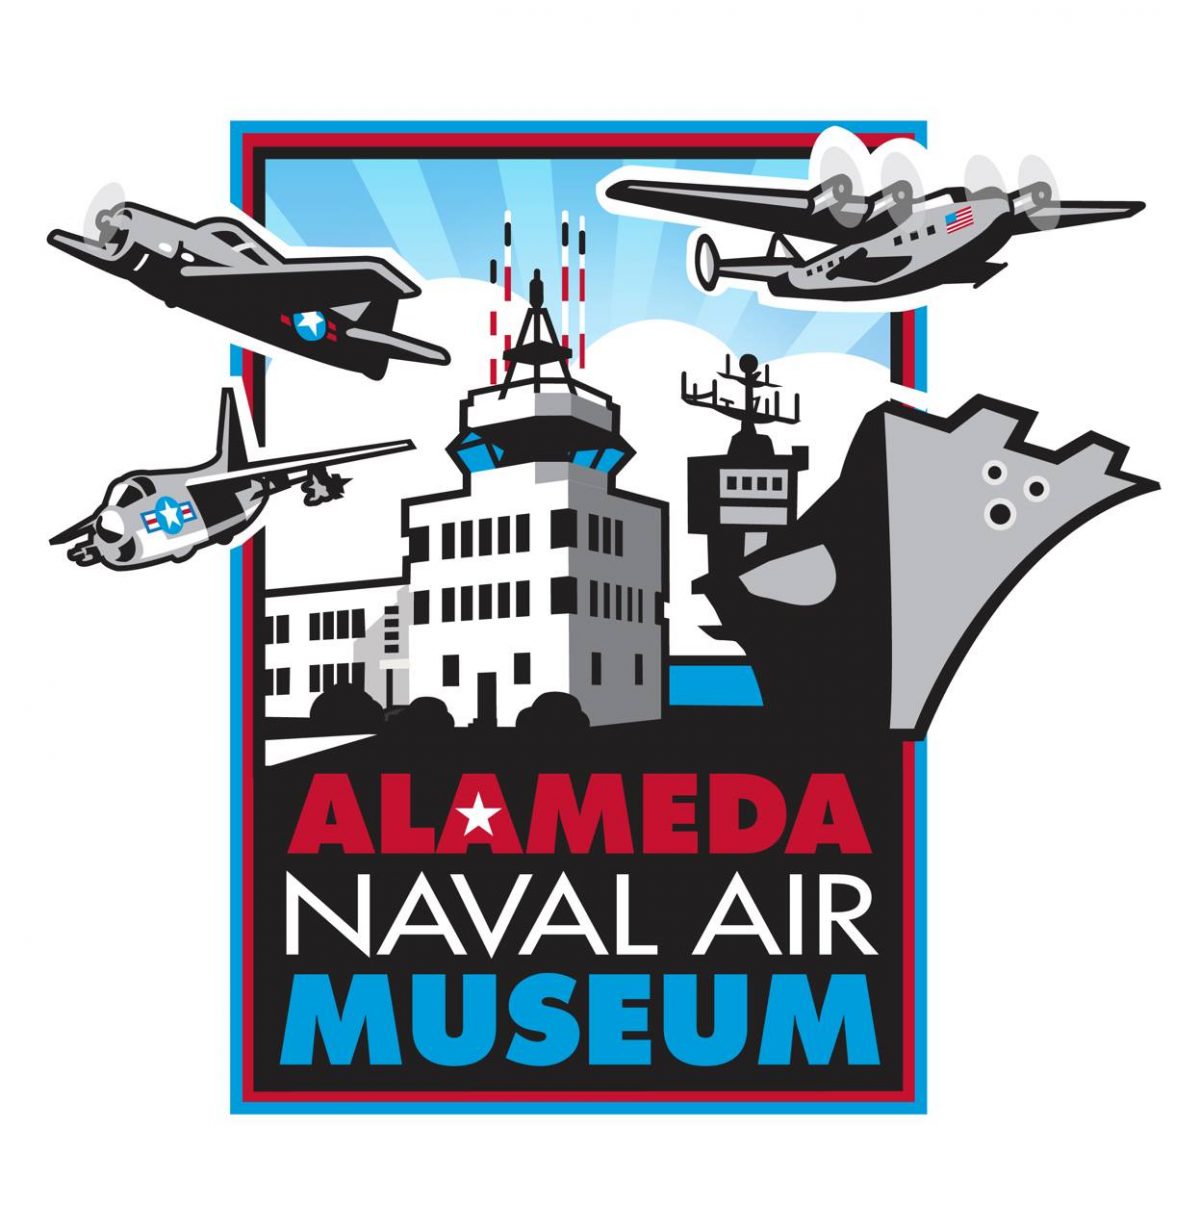 Alameda Naval Air Museum Swap Meet & Car Show